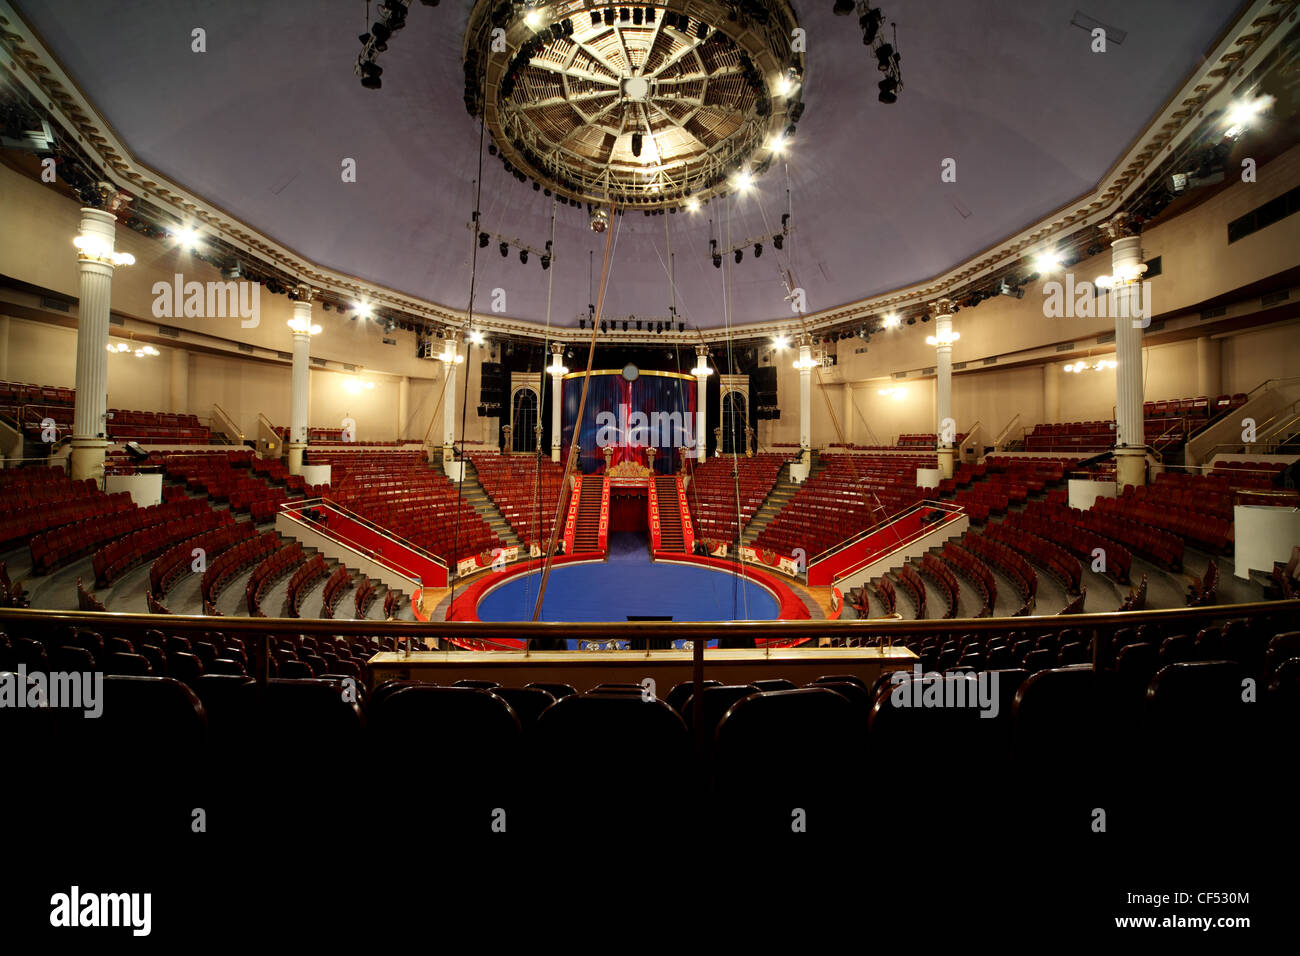 Blue Circle arena de circo lámparas encendidas, gran angular, espacio para el texto en la parte inferior Foto de stock